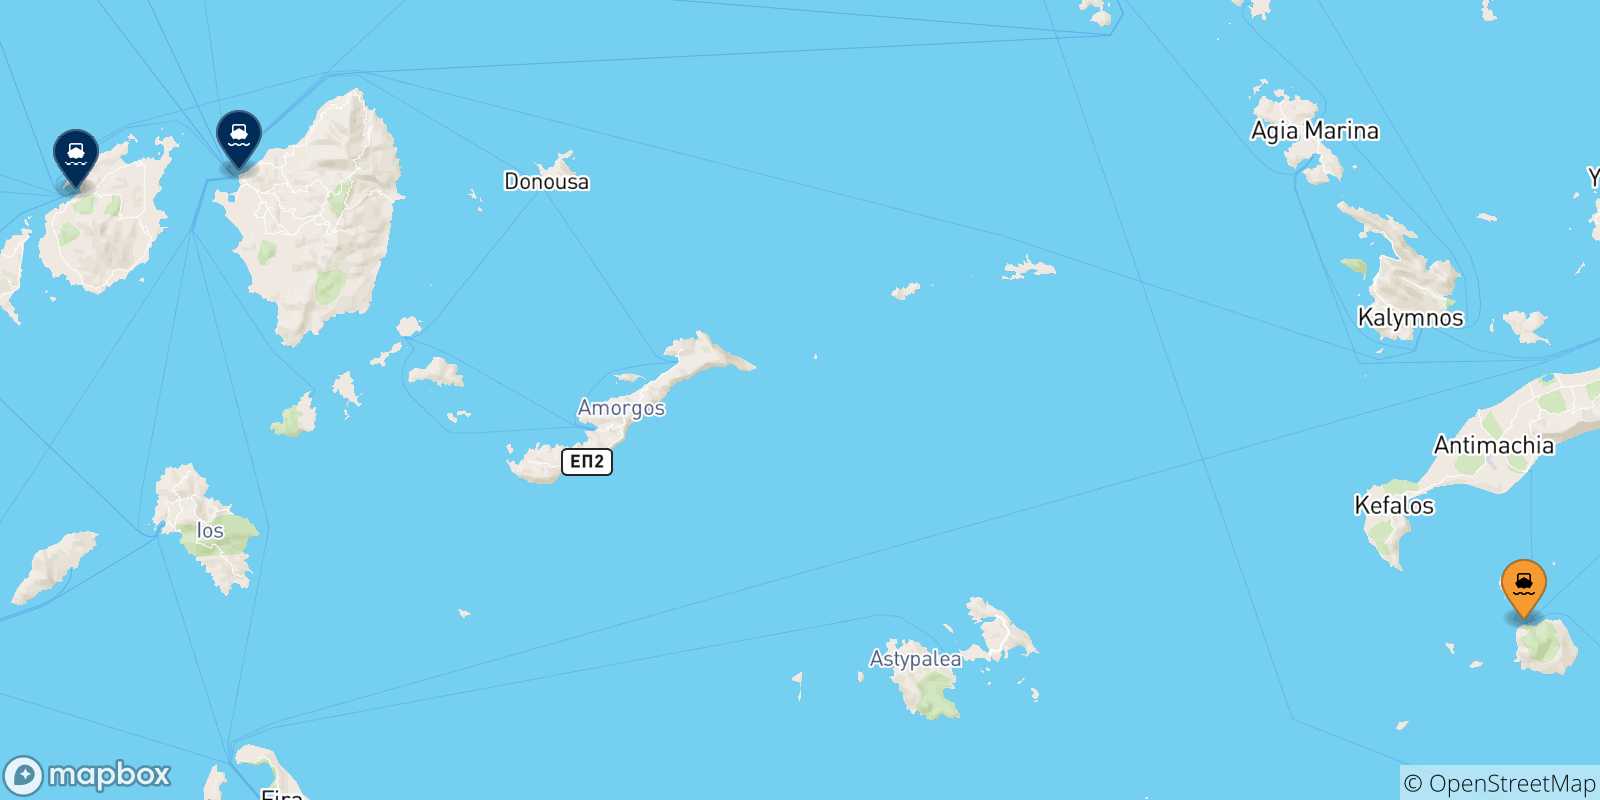 Mapa de las posibles rutas entre Nisyros y  Las Cicladas